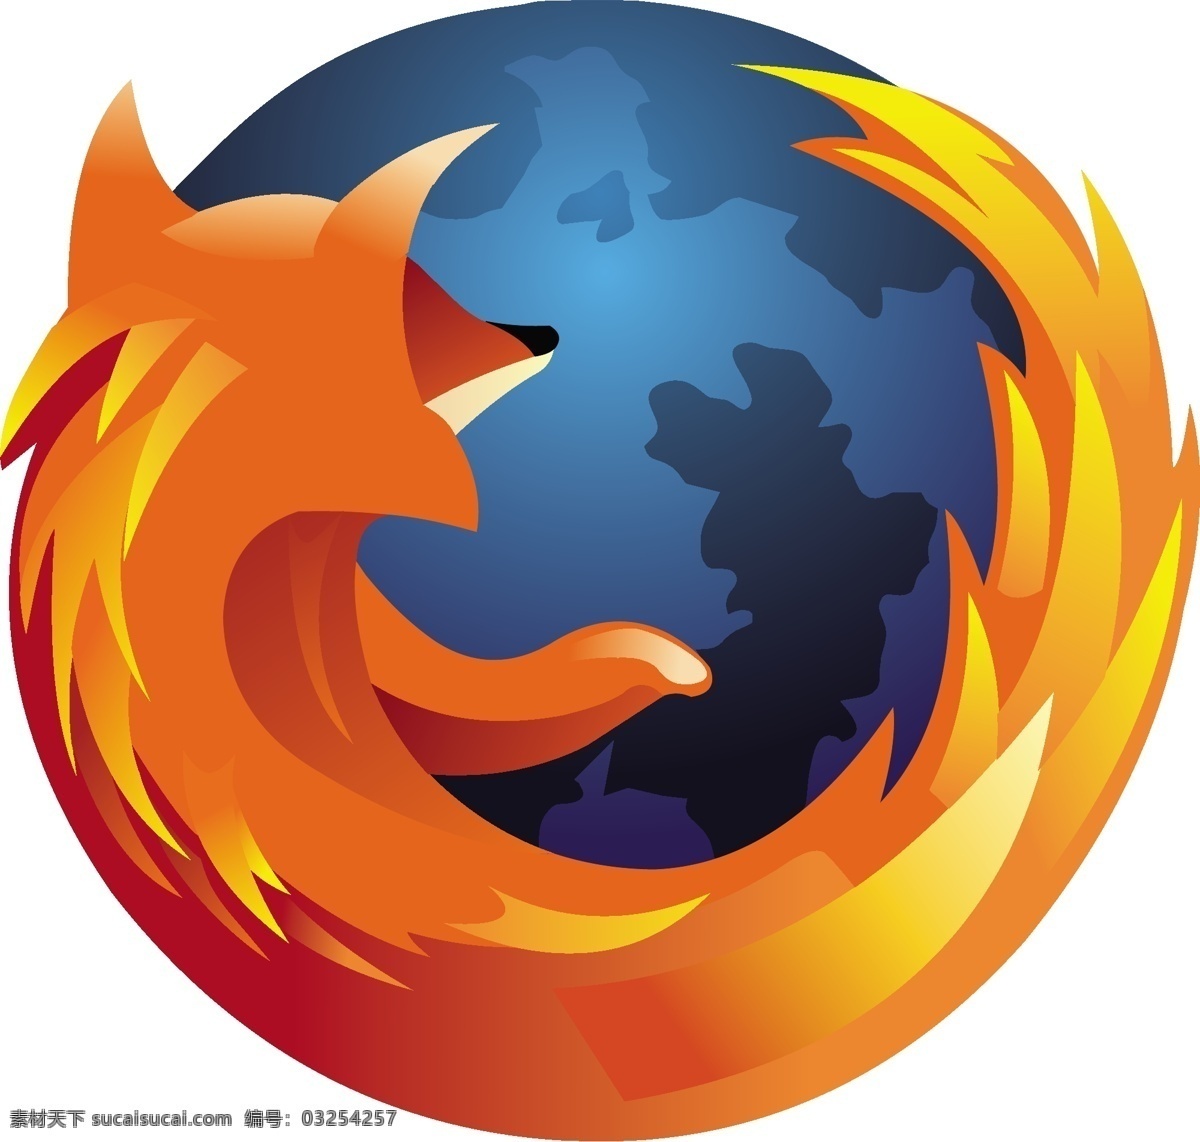 firefox 火狐 浏览器 标志图片 官方 模板 设计稿 素材元素 源文件 火狐浏览器 矢量图